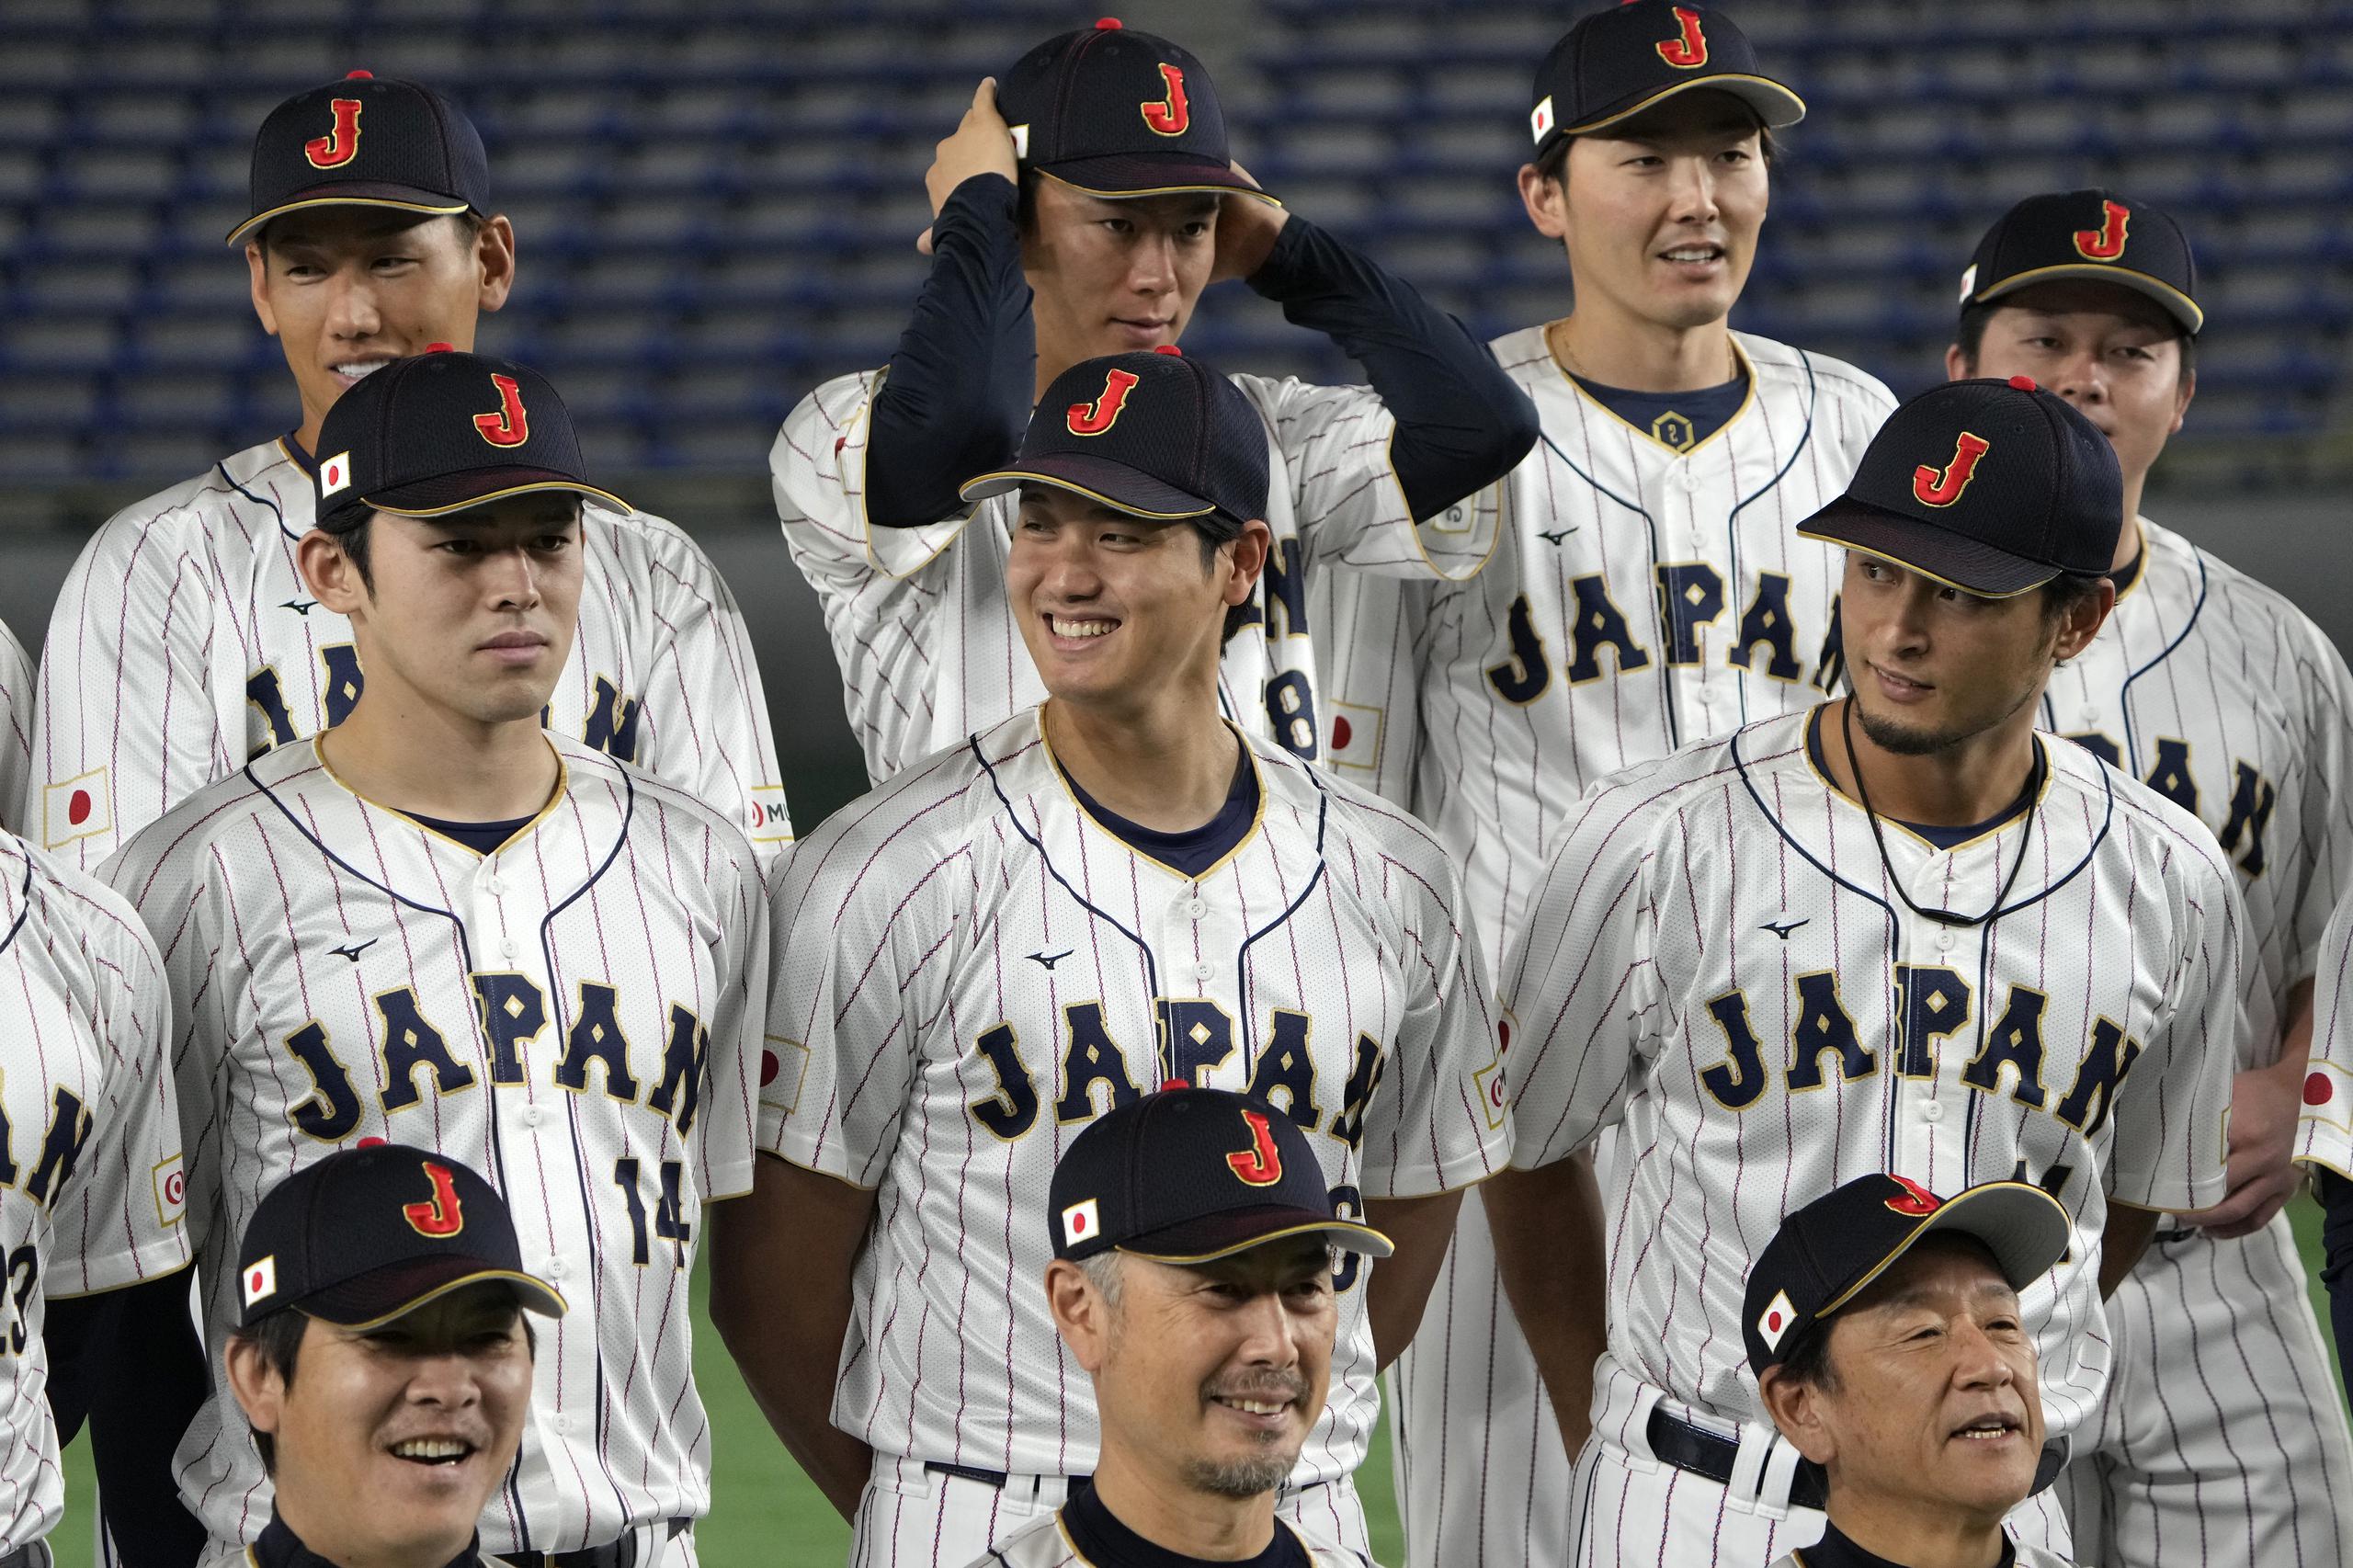 Shohei Ohtani (centro), Yu Darvish (derecha) y Roki Sasaki (izquierda), lanzadores de la selección de Japón, posan para un foto previo al debut en el Clásico Mundial de Béisbol.